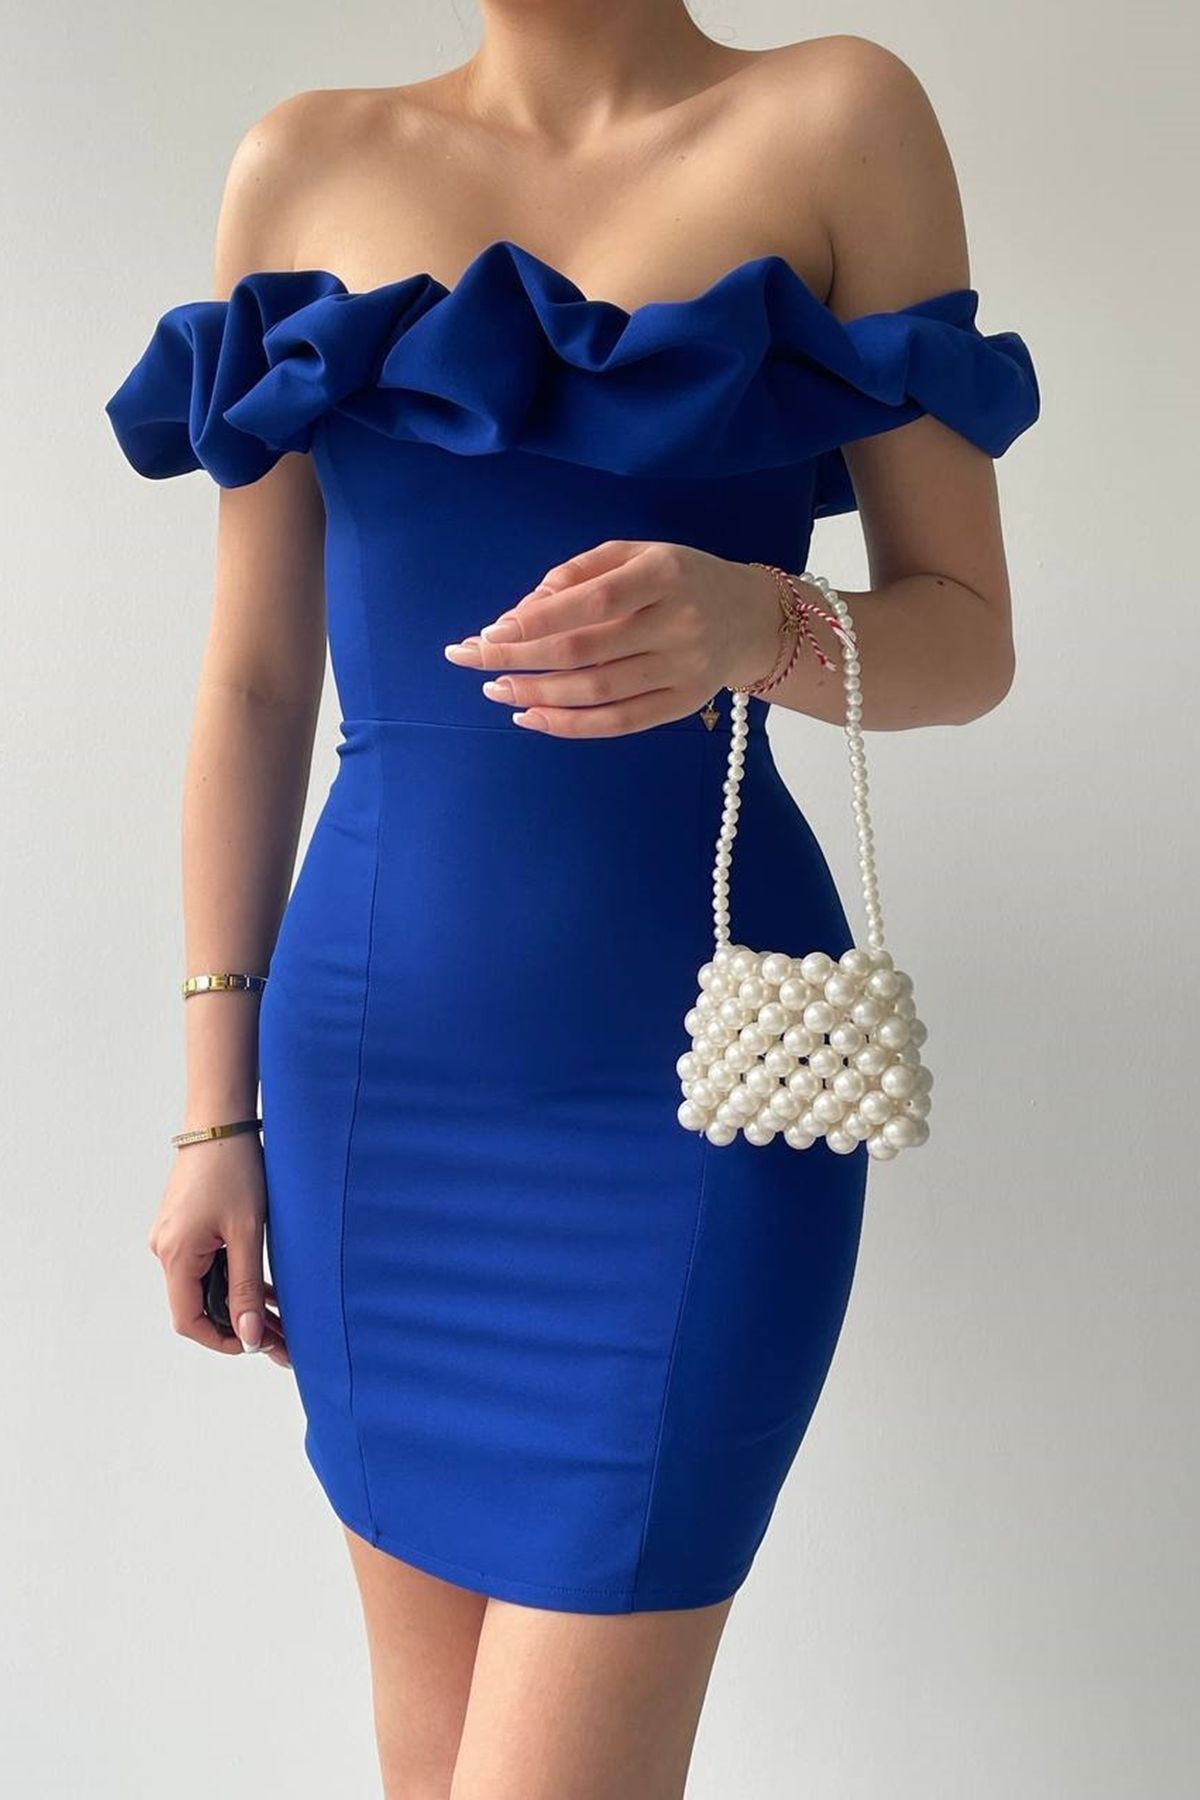 lovebox Kadın Atlas Kumaş Fırfırlı Yaka Tasarım Saks Mavi Mini Abiye Elbise 223